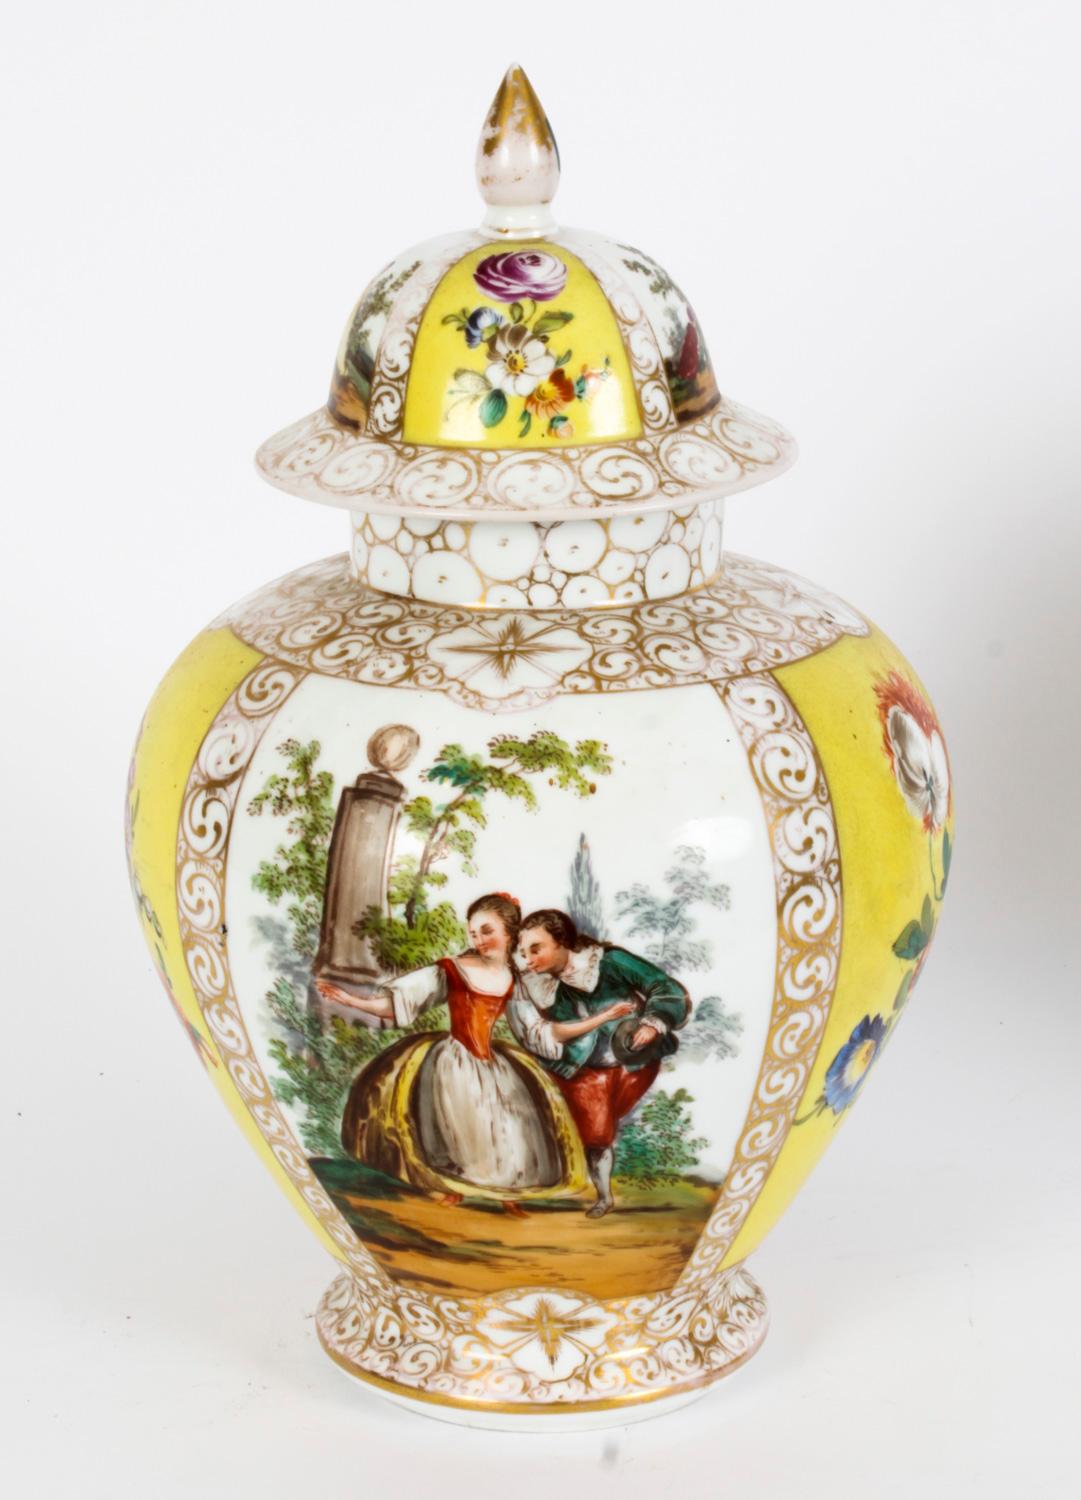 Il s'agit d'une belle paire de vases à couvercle et de couvercles de Dresde, datant d'environ 1900.
 
Superbement peint avec des panneaux de scènes figuratives de couples en train de se courtiser et de fleurs sur un fond jaune et doré, avec des